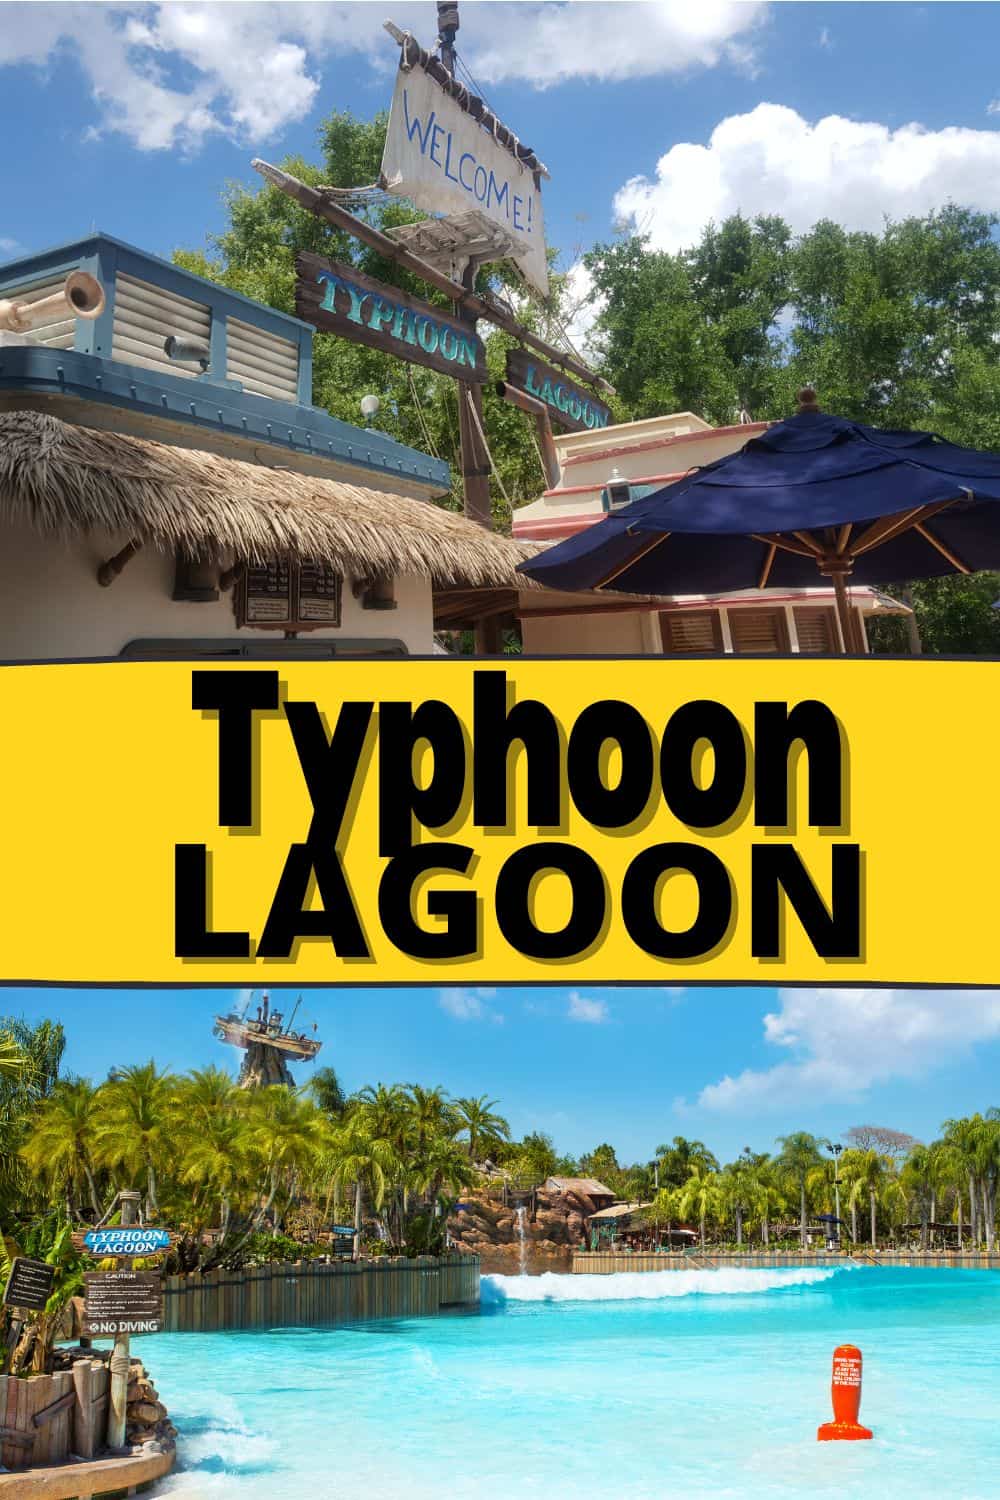 Typhoon Lagoon Waterpark